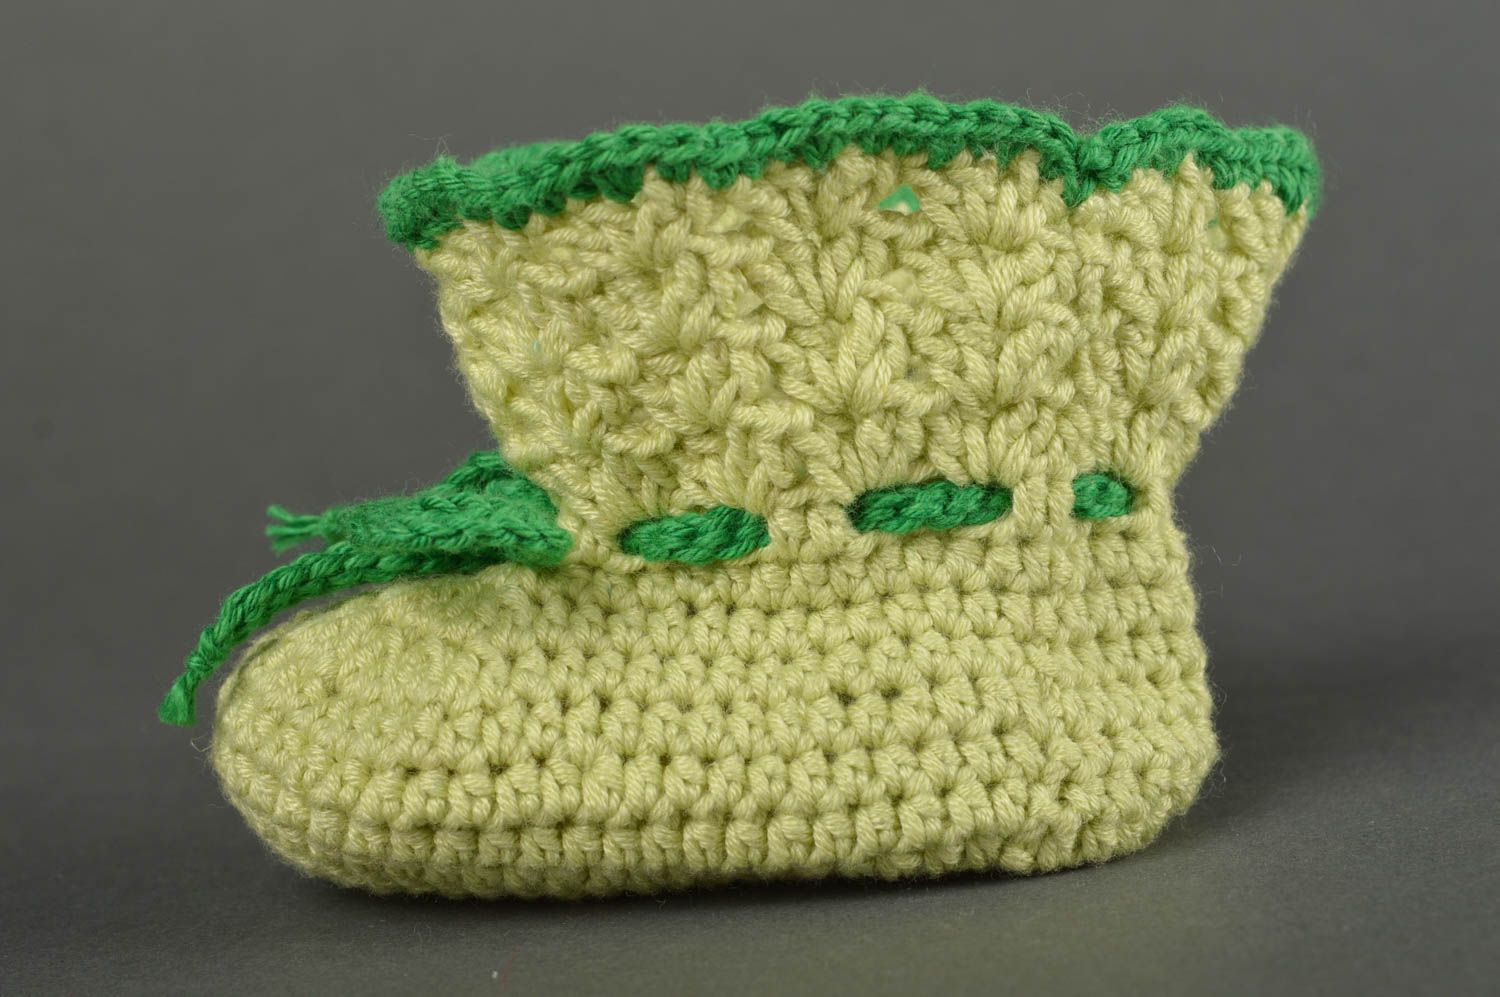 Chaussons de bébé au crochet faits main verts originaux Chaussures pour bébé photo 5